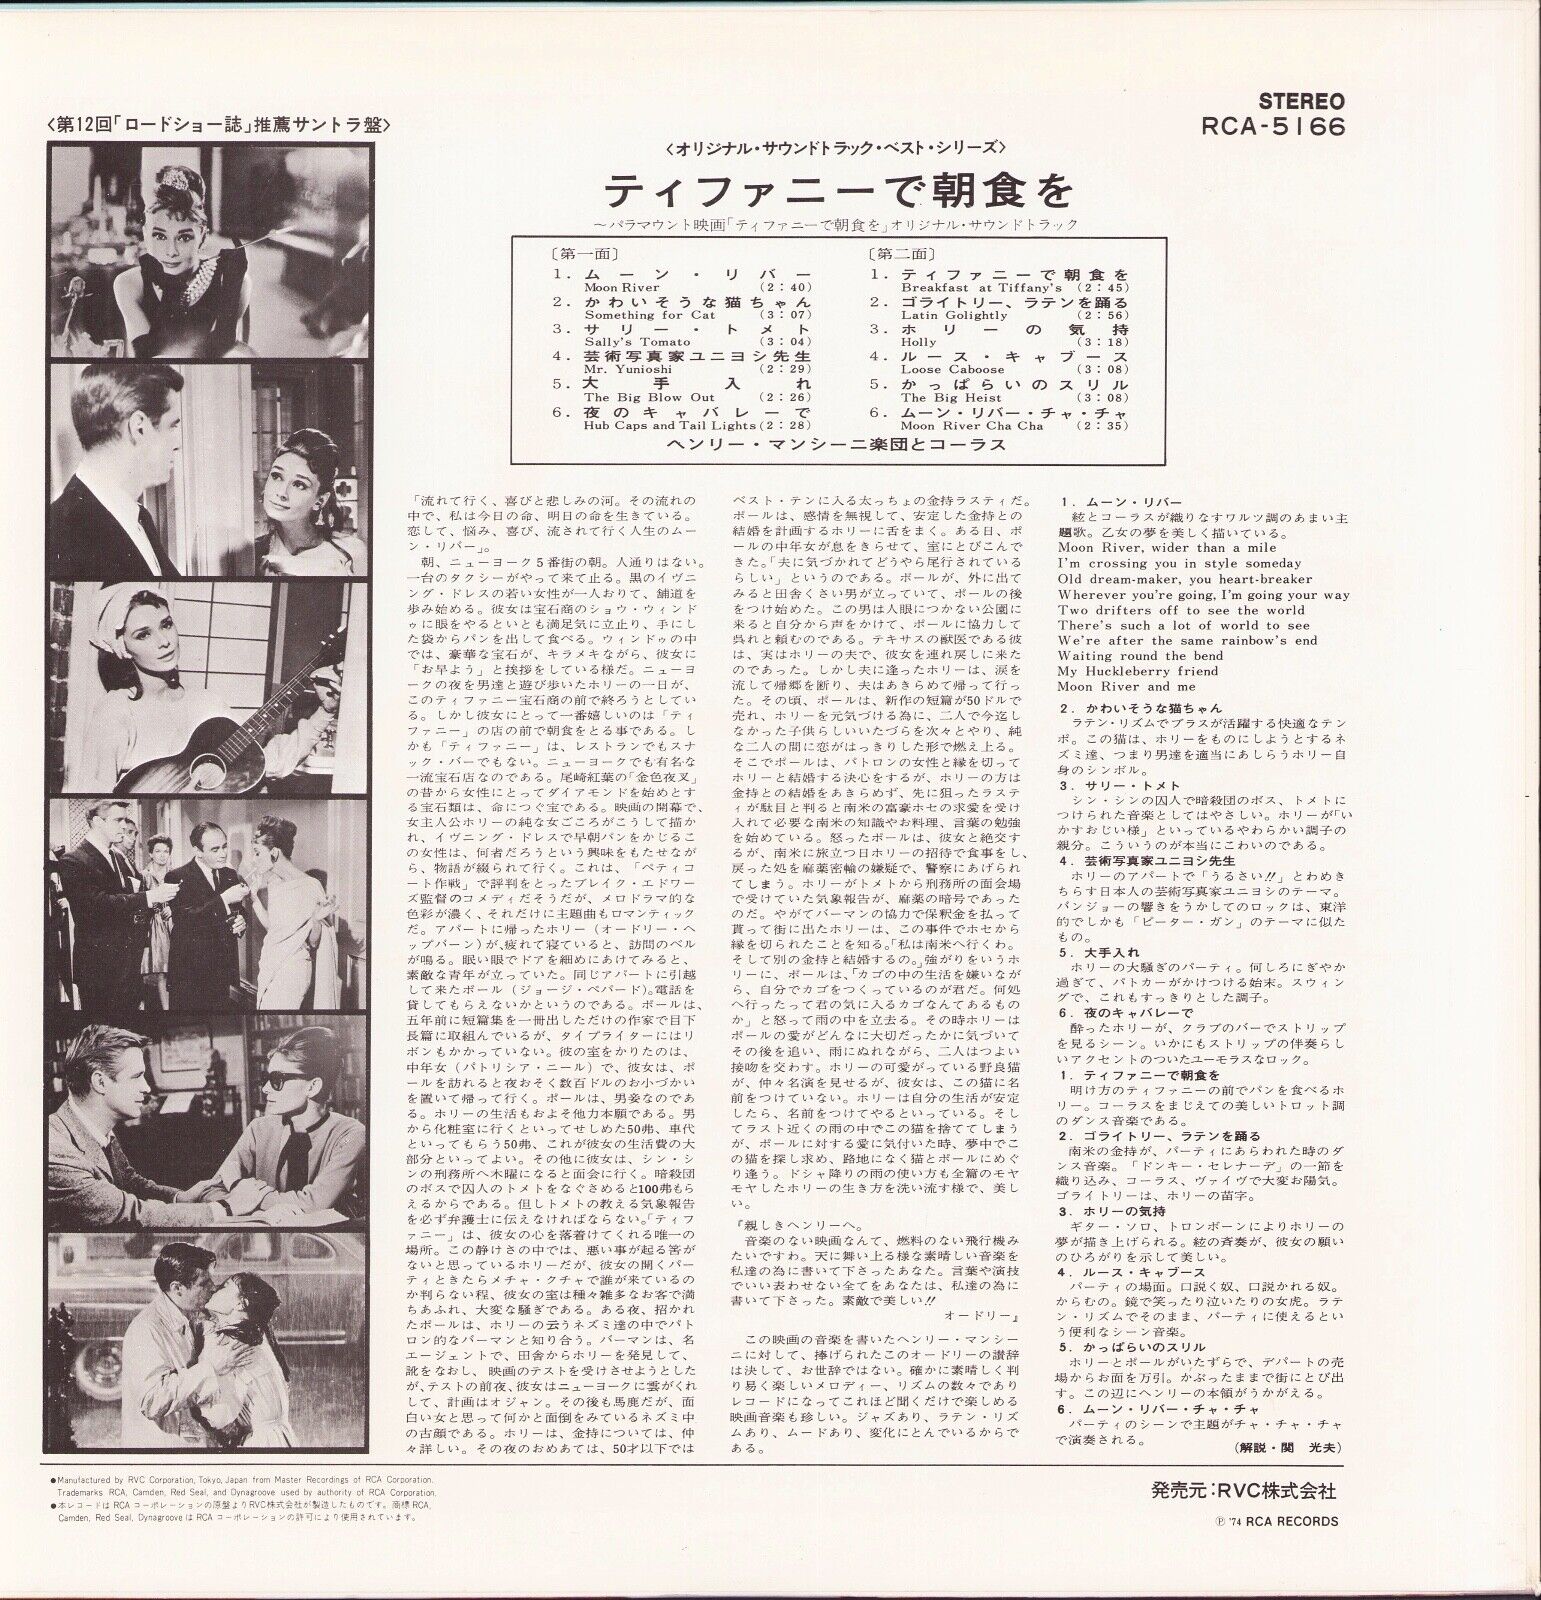 Ennio Morricone ‎- L'Attentat Bande Originale Du Film Vinyl LP